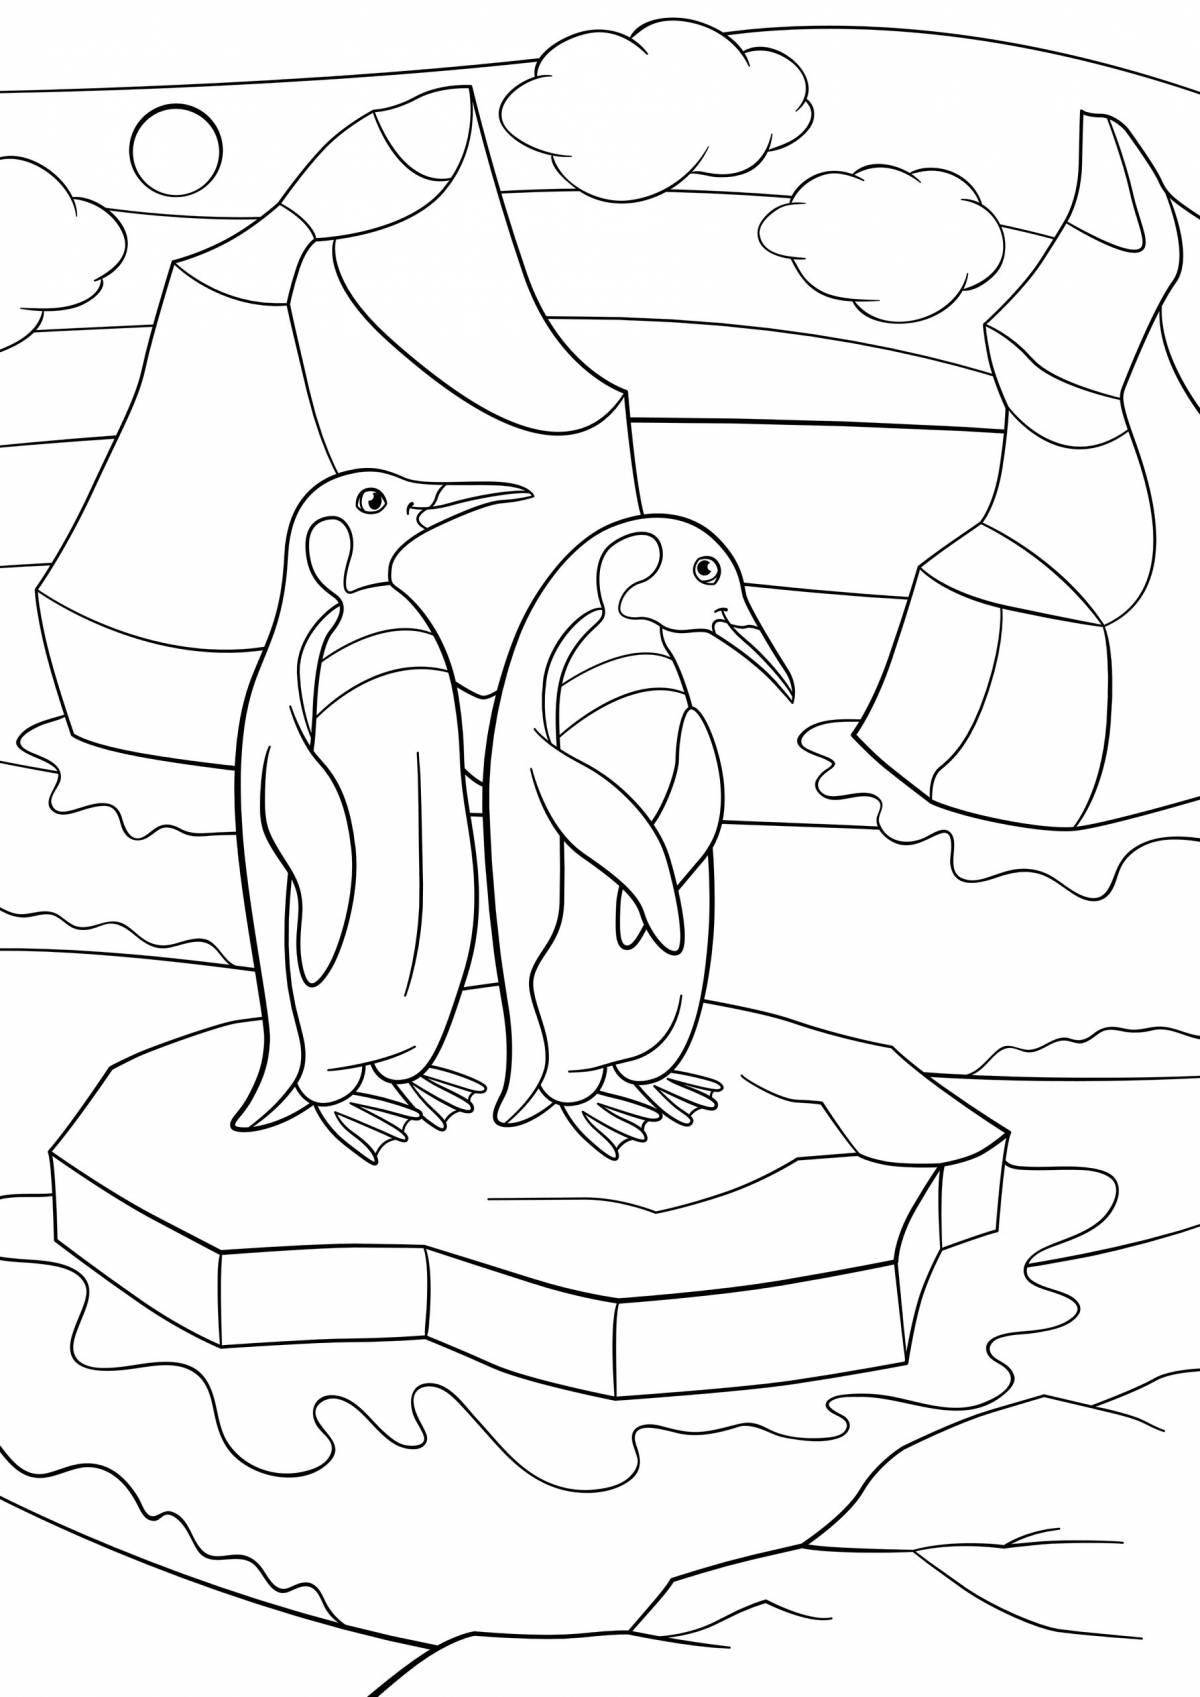 Раскраска веселый пингвин на льдине для детей